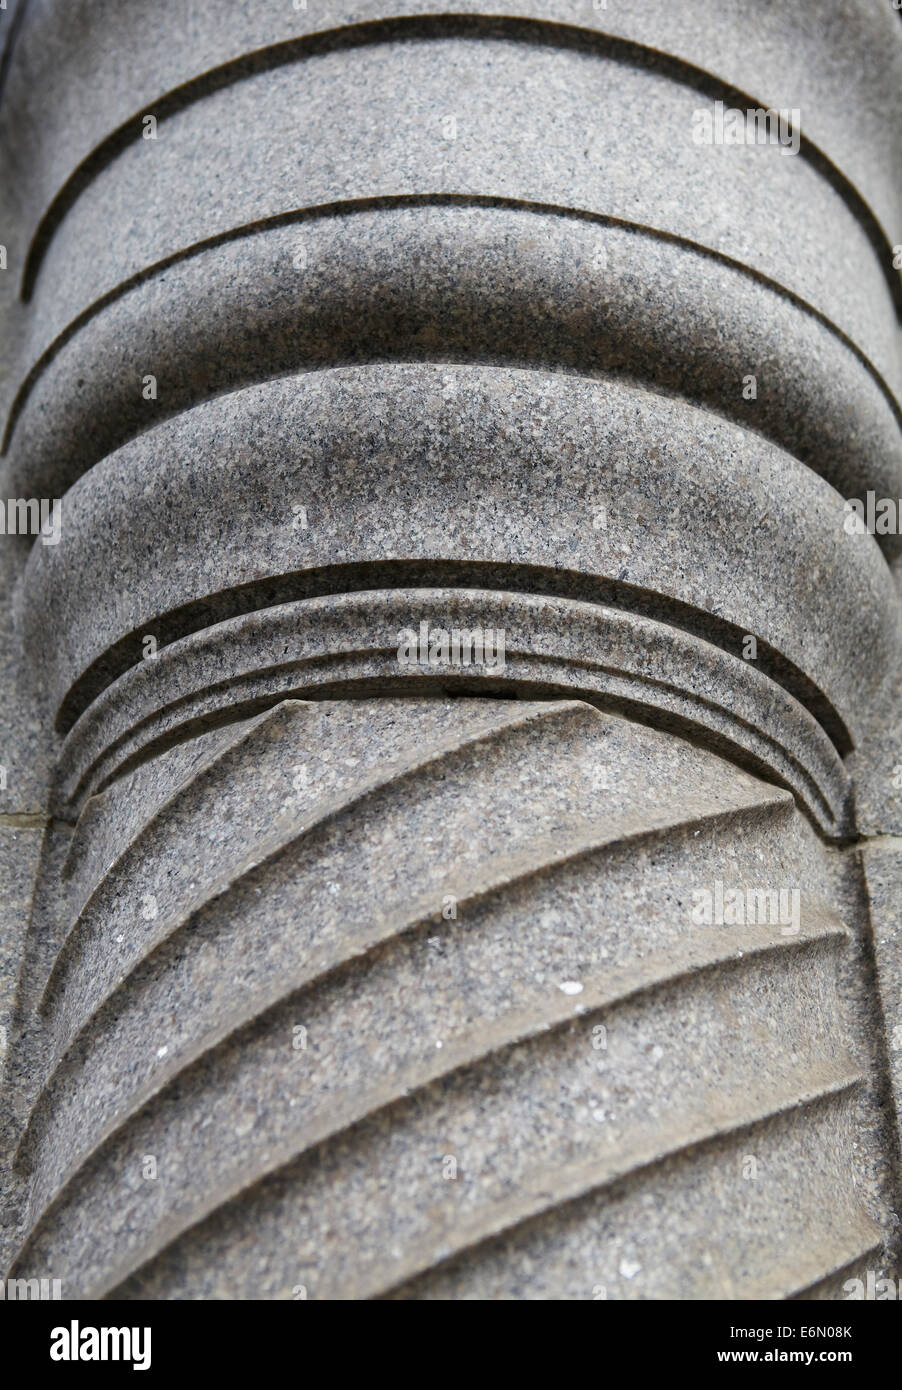 London-Texturen, typischen grauen Stein. Spalte Muster. Stockfoto